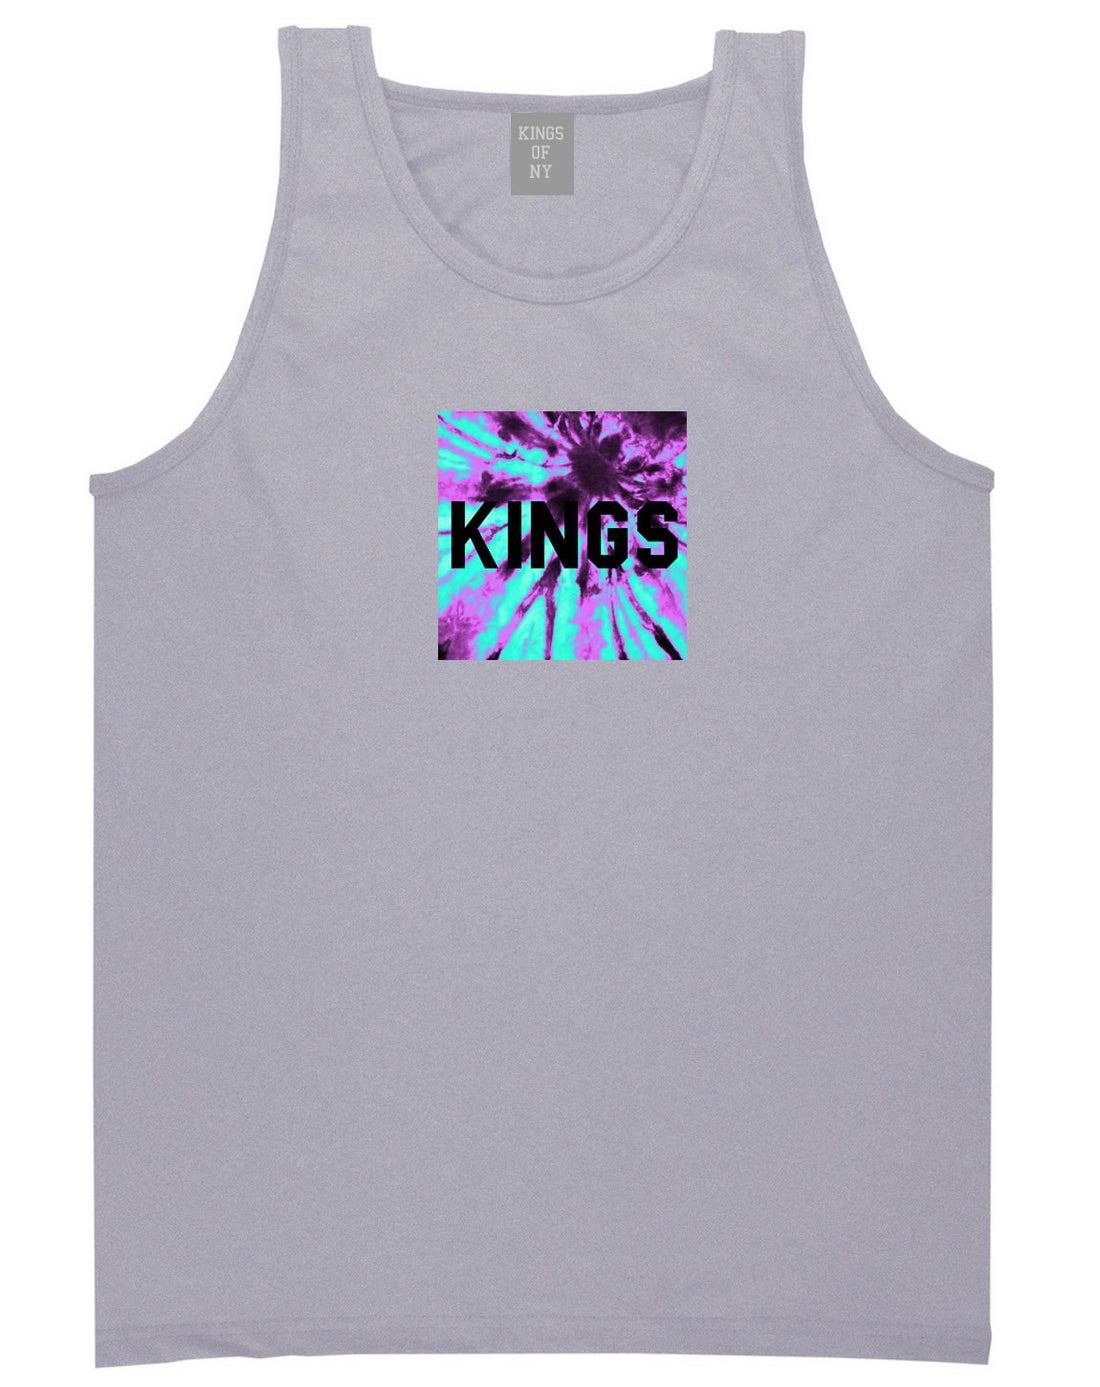 Kings Blue Tie Dye Box Logo Tank Top in Grey By Kings Of NY